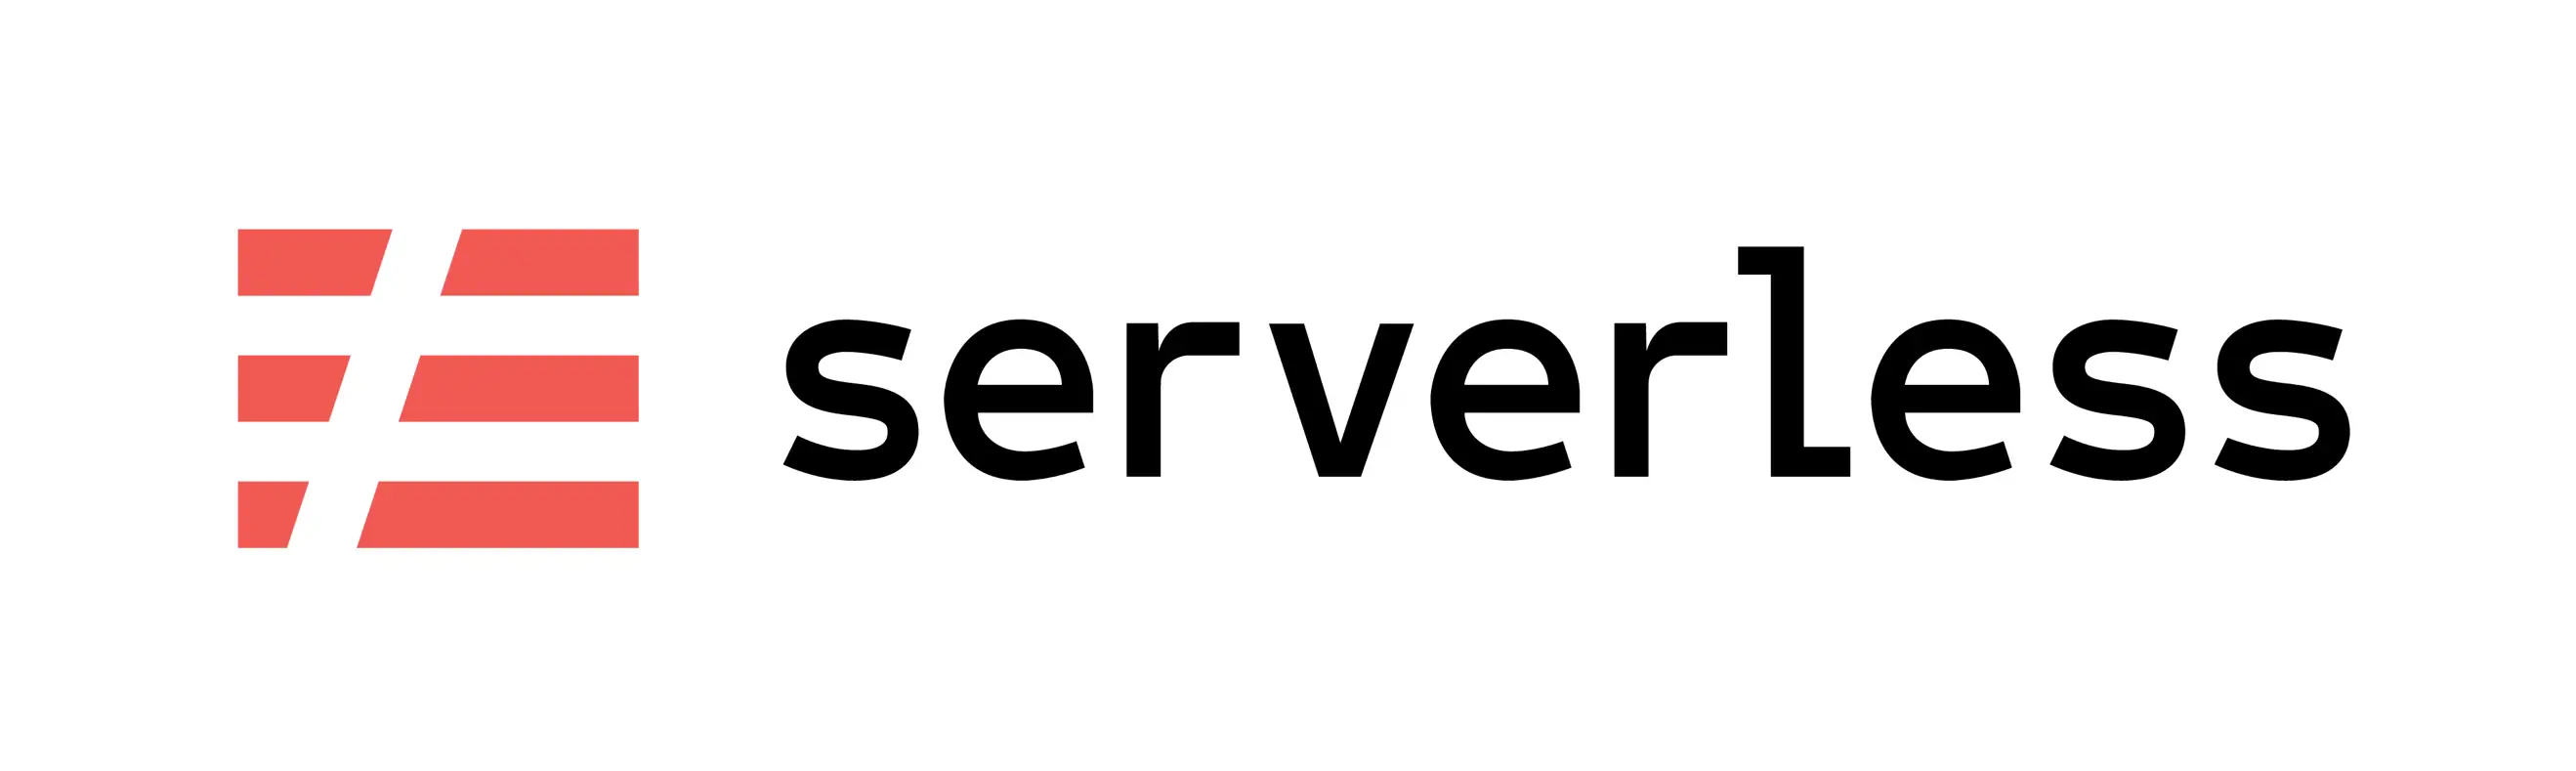 TechnologyStack.Tab.DevOps.Serverless